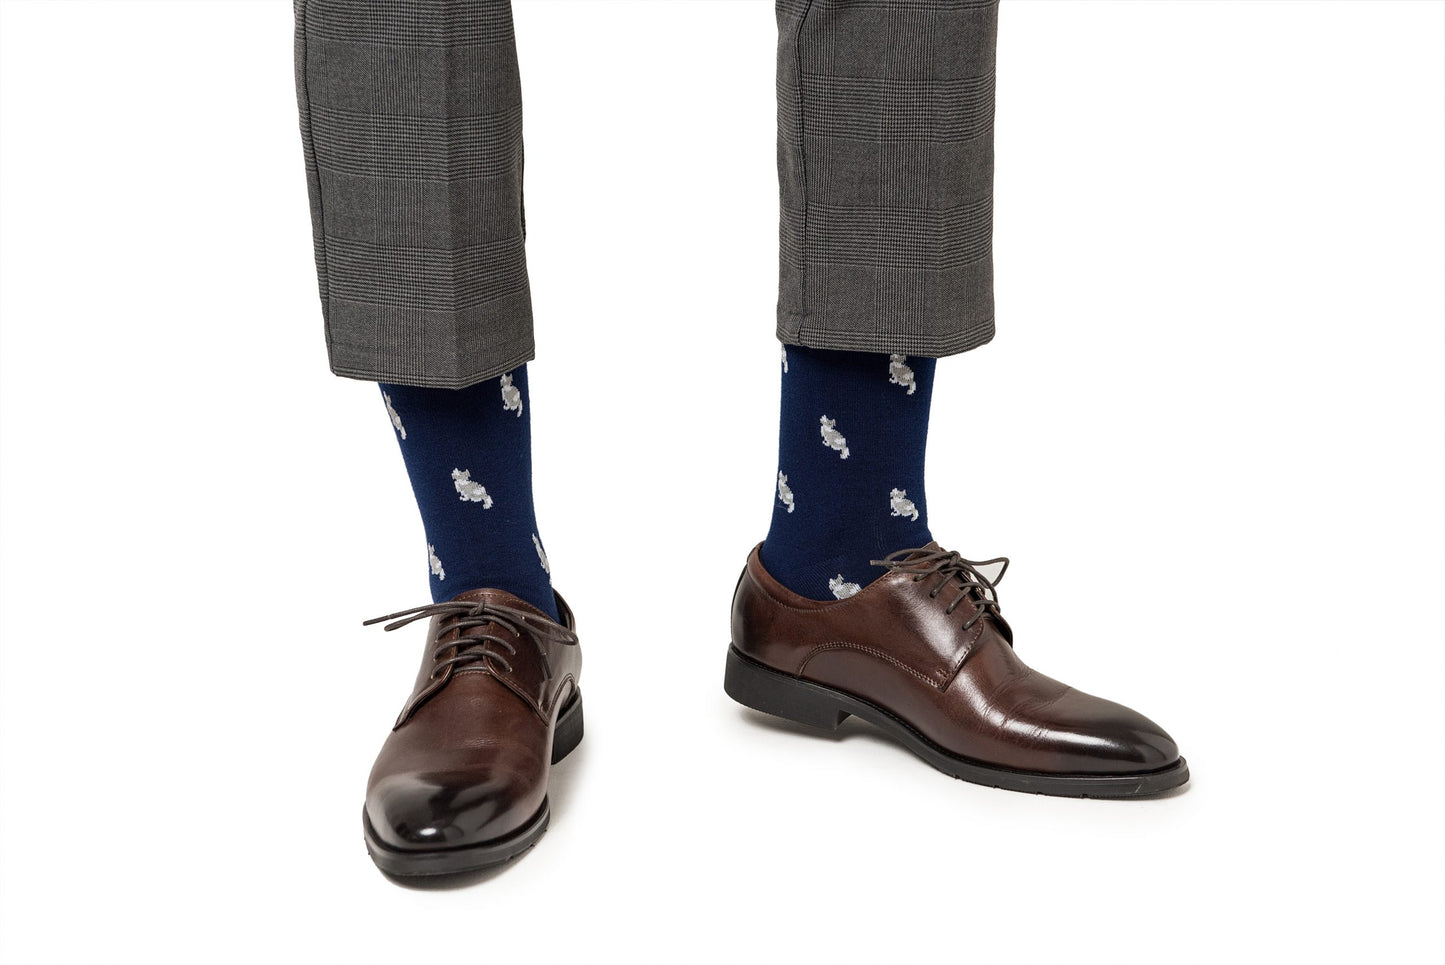 Men's Cat Socks from Polo Ralph Lauren.